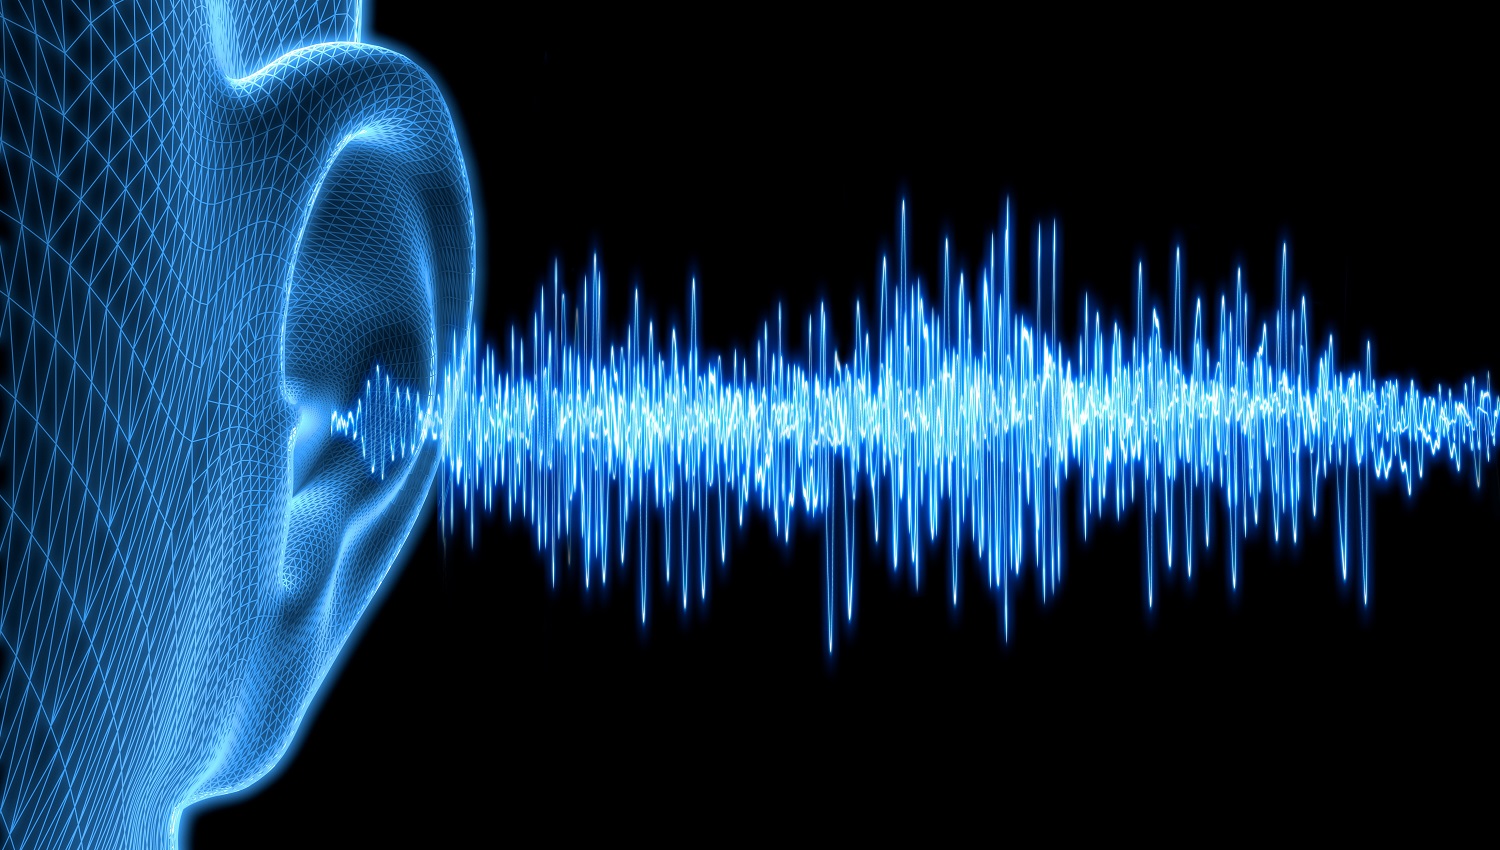 5 claros motivos por los que el sonido es el elemento principal en una alerta temprana